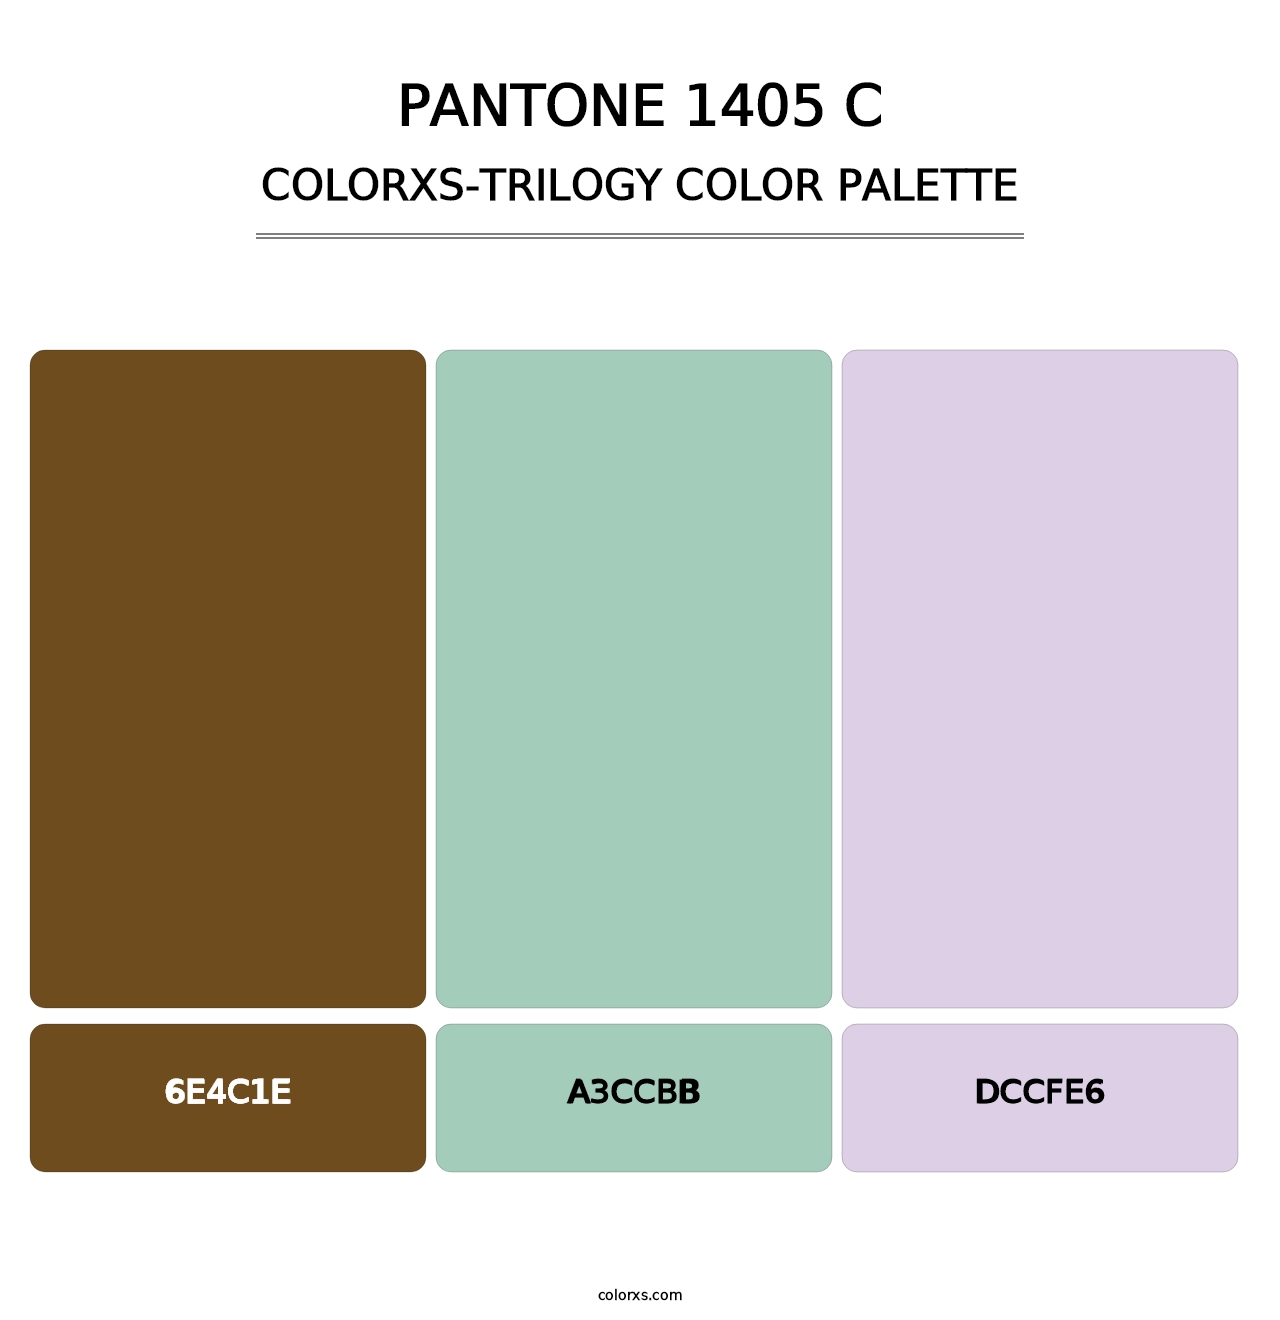 PANTONE 1405 C - Colorxs Trilogy Palette